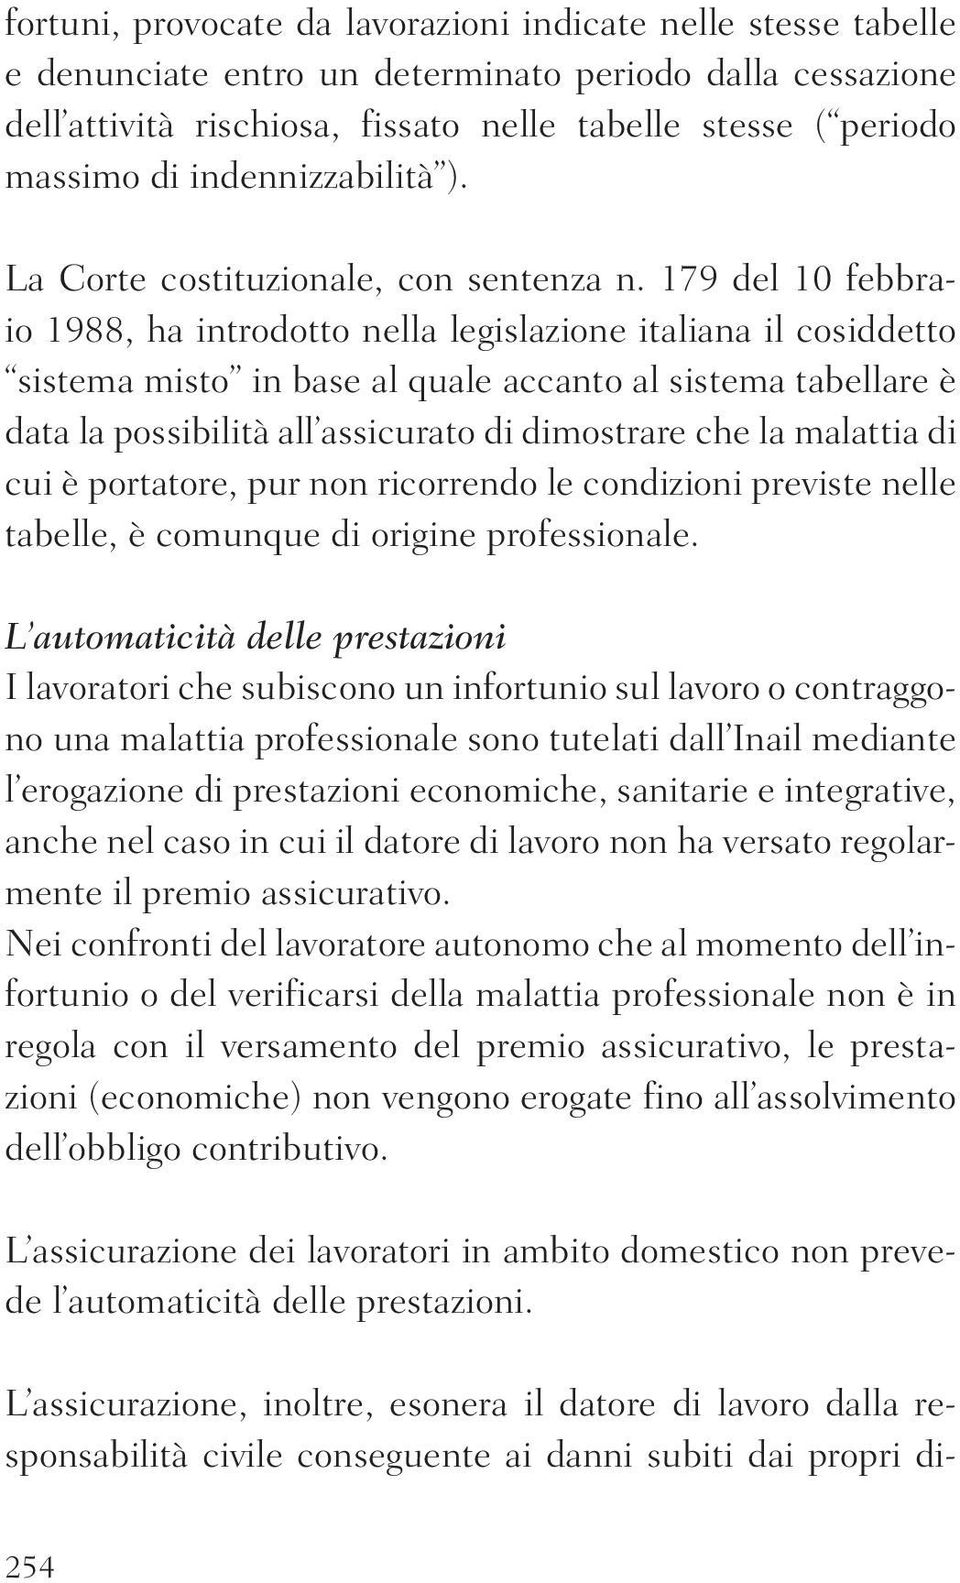 179 del 10 febbraio 1988, ha introdotto nella legislazione italiana il cosiddetto sistema misto in base al quale accanto al sistema tabellare è data la possibilità all assicurato di dimostrare che la